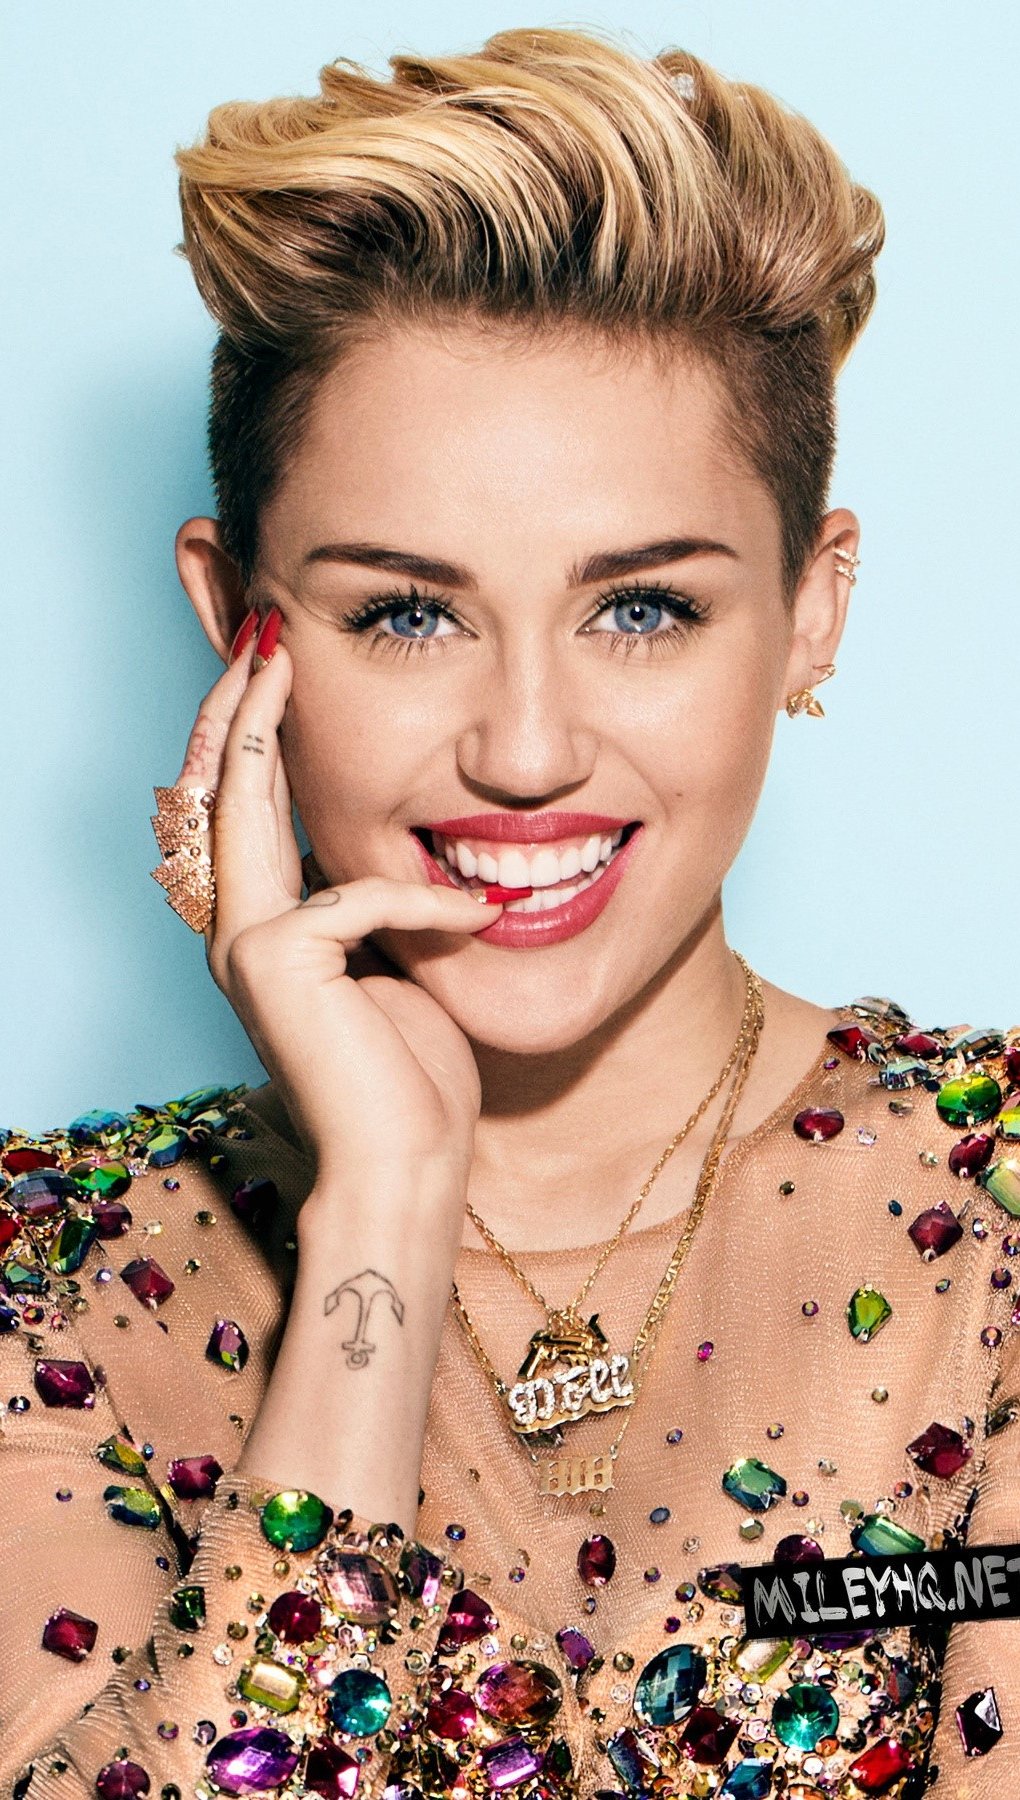 Fondos de pantalla Miley Cyrus rubia Vertical